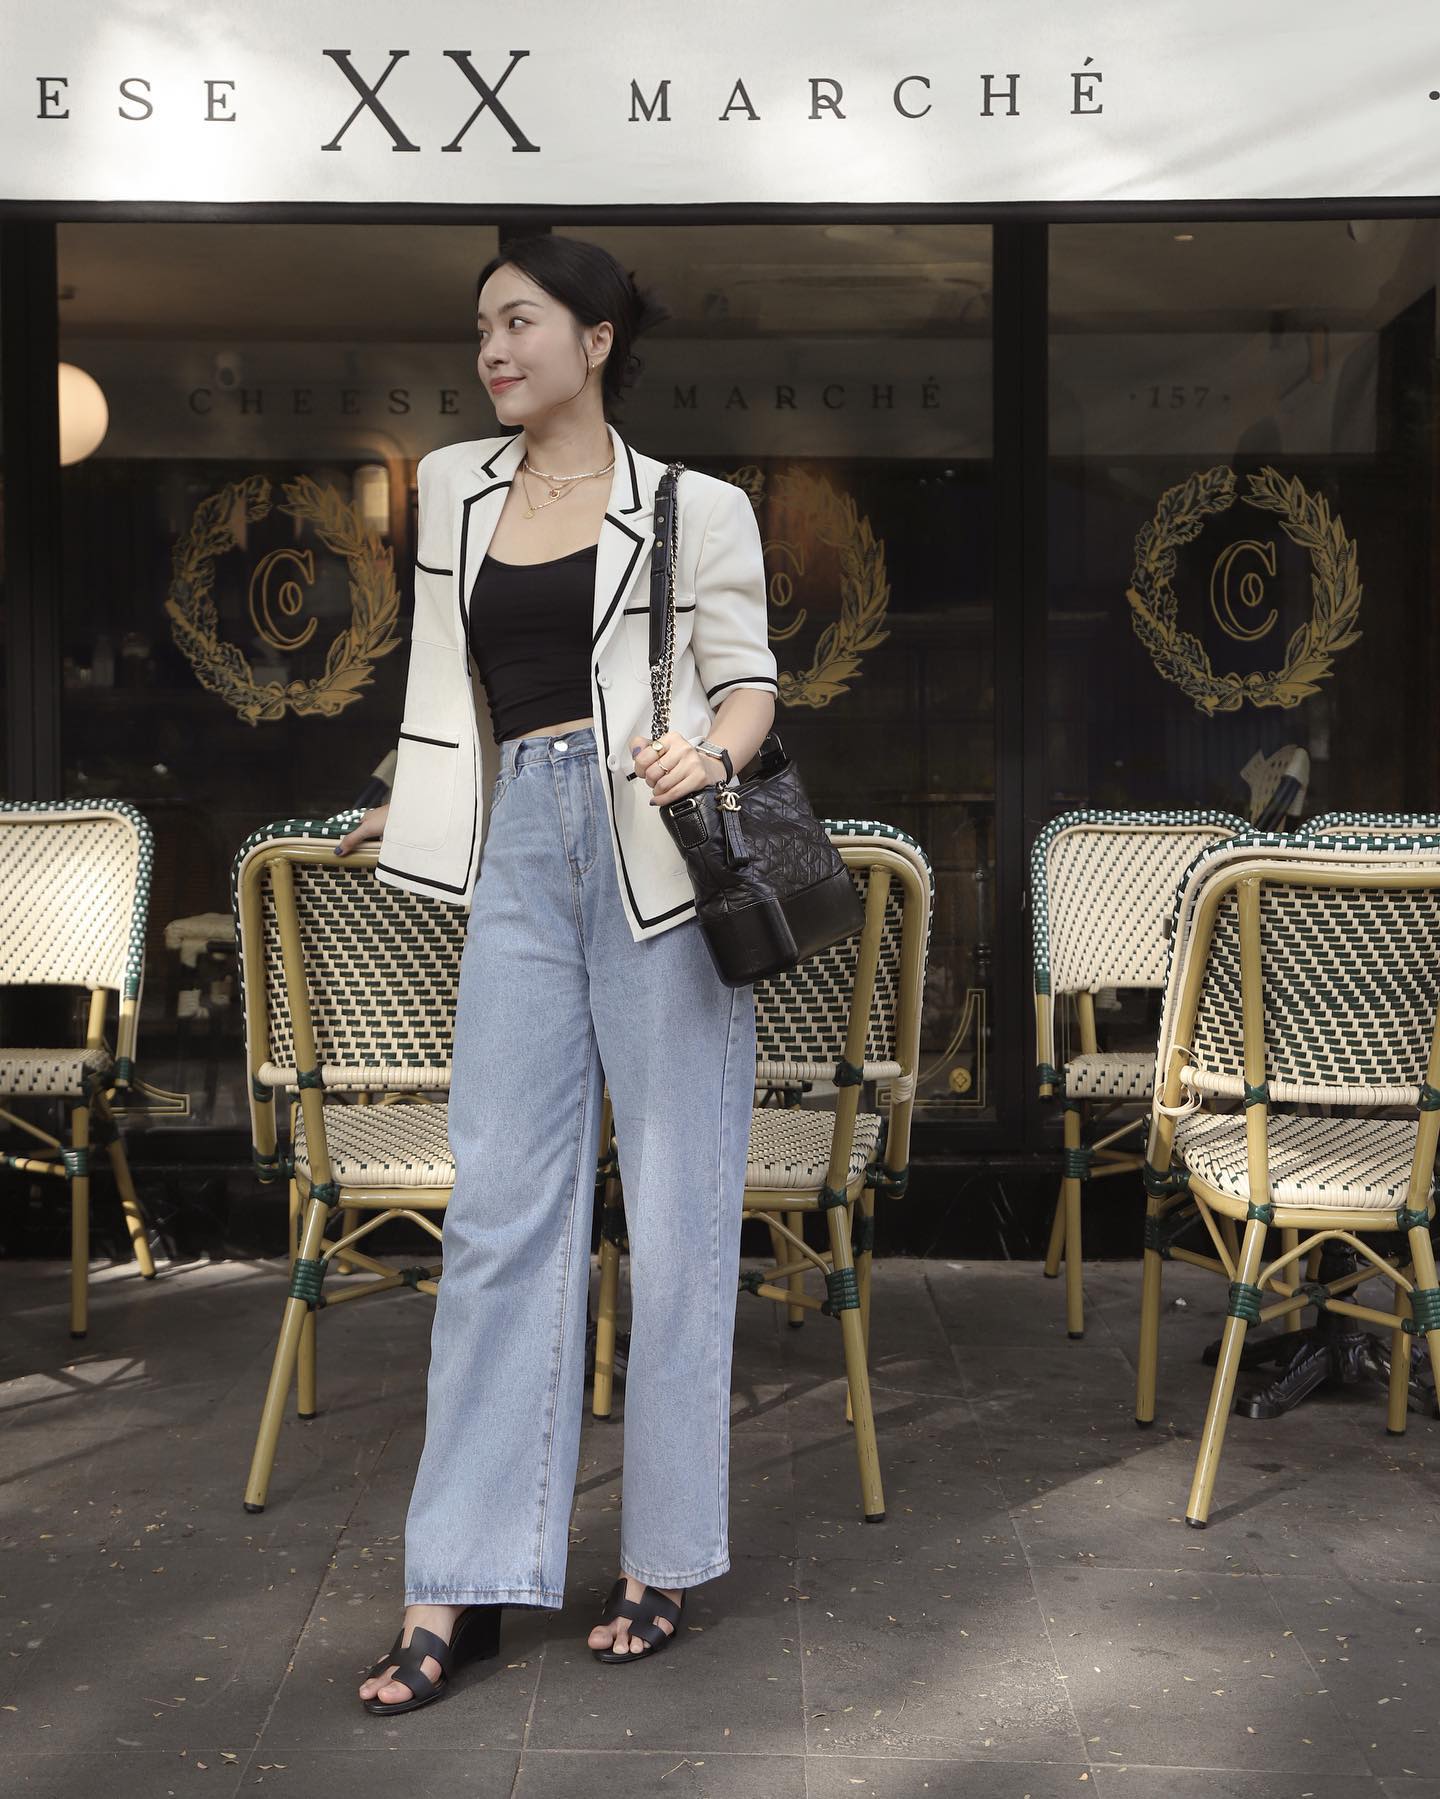 Kiểu quần jeans mê hoặc các mỹ nhân Việt vì cứ mặc lên là trẻ trung, sành điệu-6